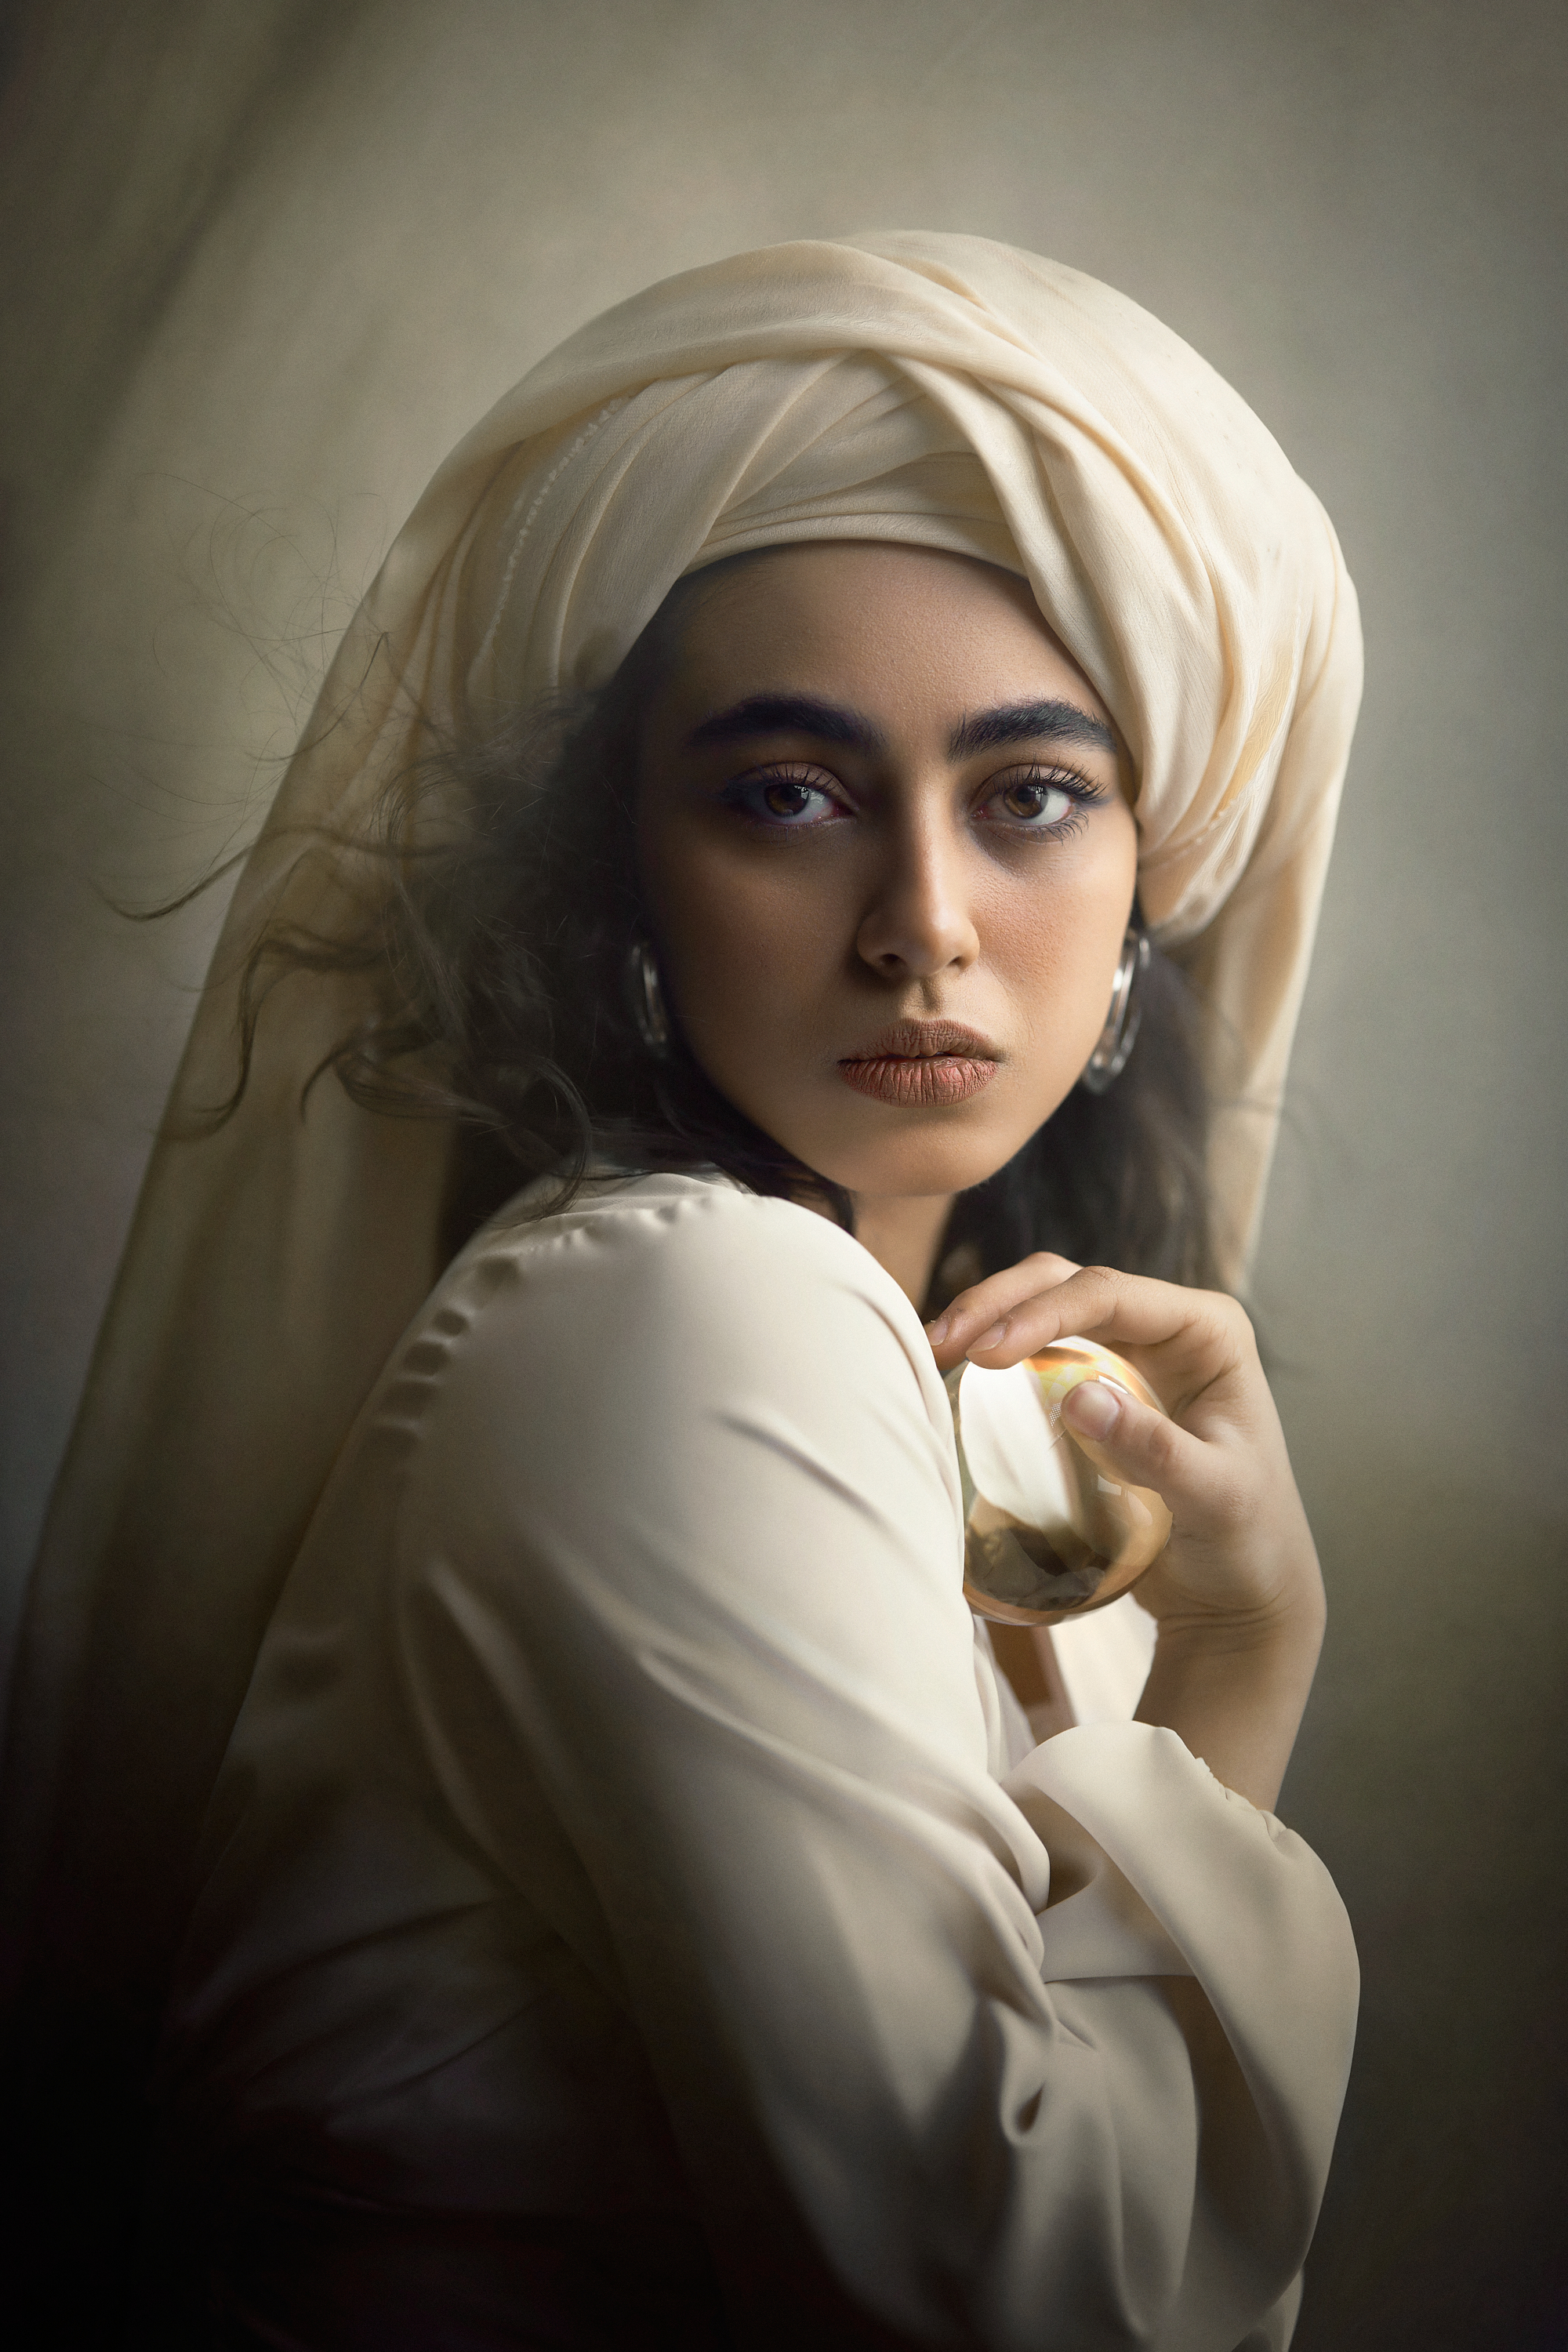 #portrait #fineart #studioshot #dramaticportrait, Morteza Khobzi